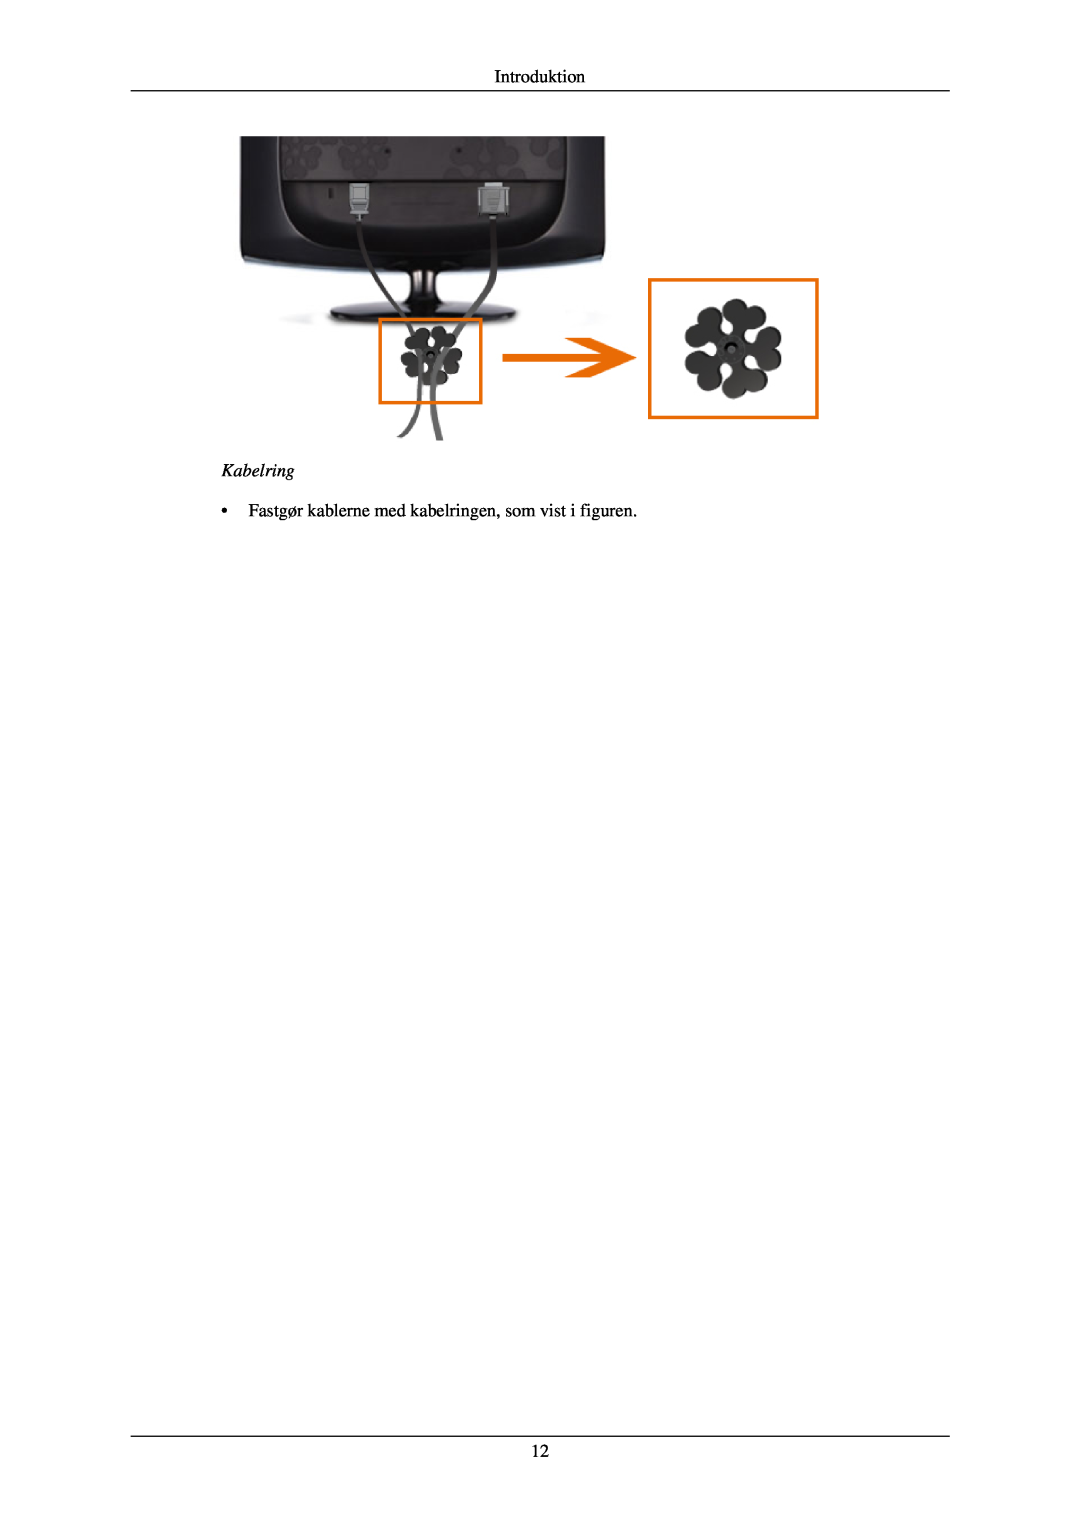 Samsung LS24CMKKFV/EN manual Kabelring, Introduktion, Fastgør kablerne med kabelringen, som vist i figuren 